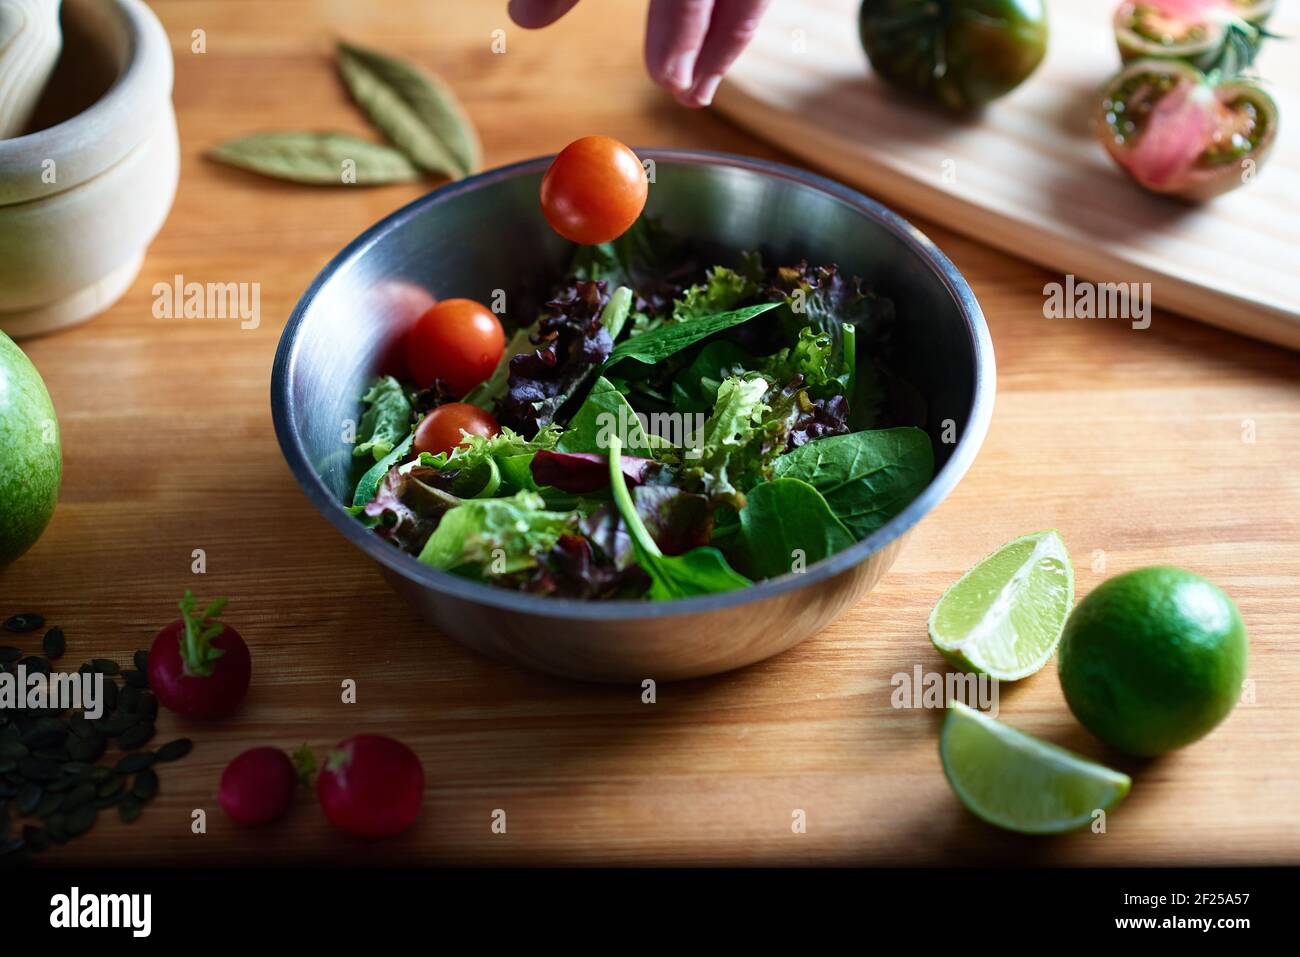 Une main jette une tomate cerise sur une salade dans un bol en métal sur une table en bois dans une cuisine. Dans la photographie gastronomique vous pouvez voir des radis, des graines, Banque D'Images